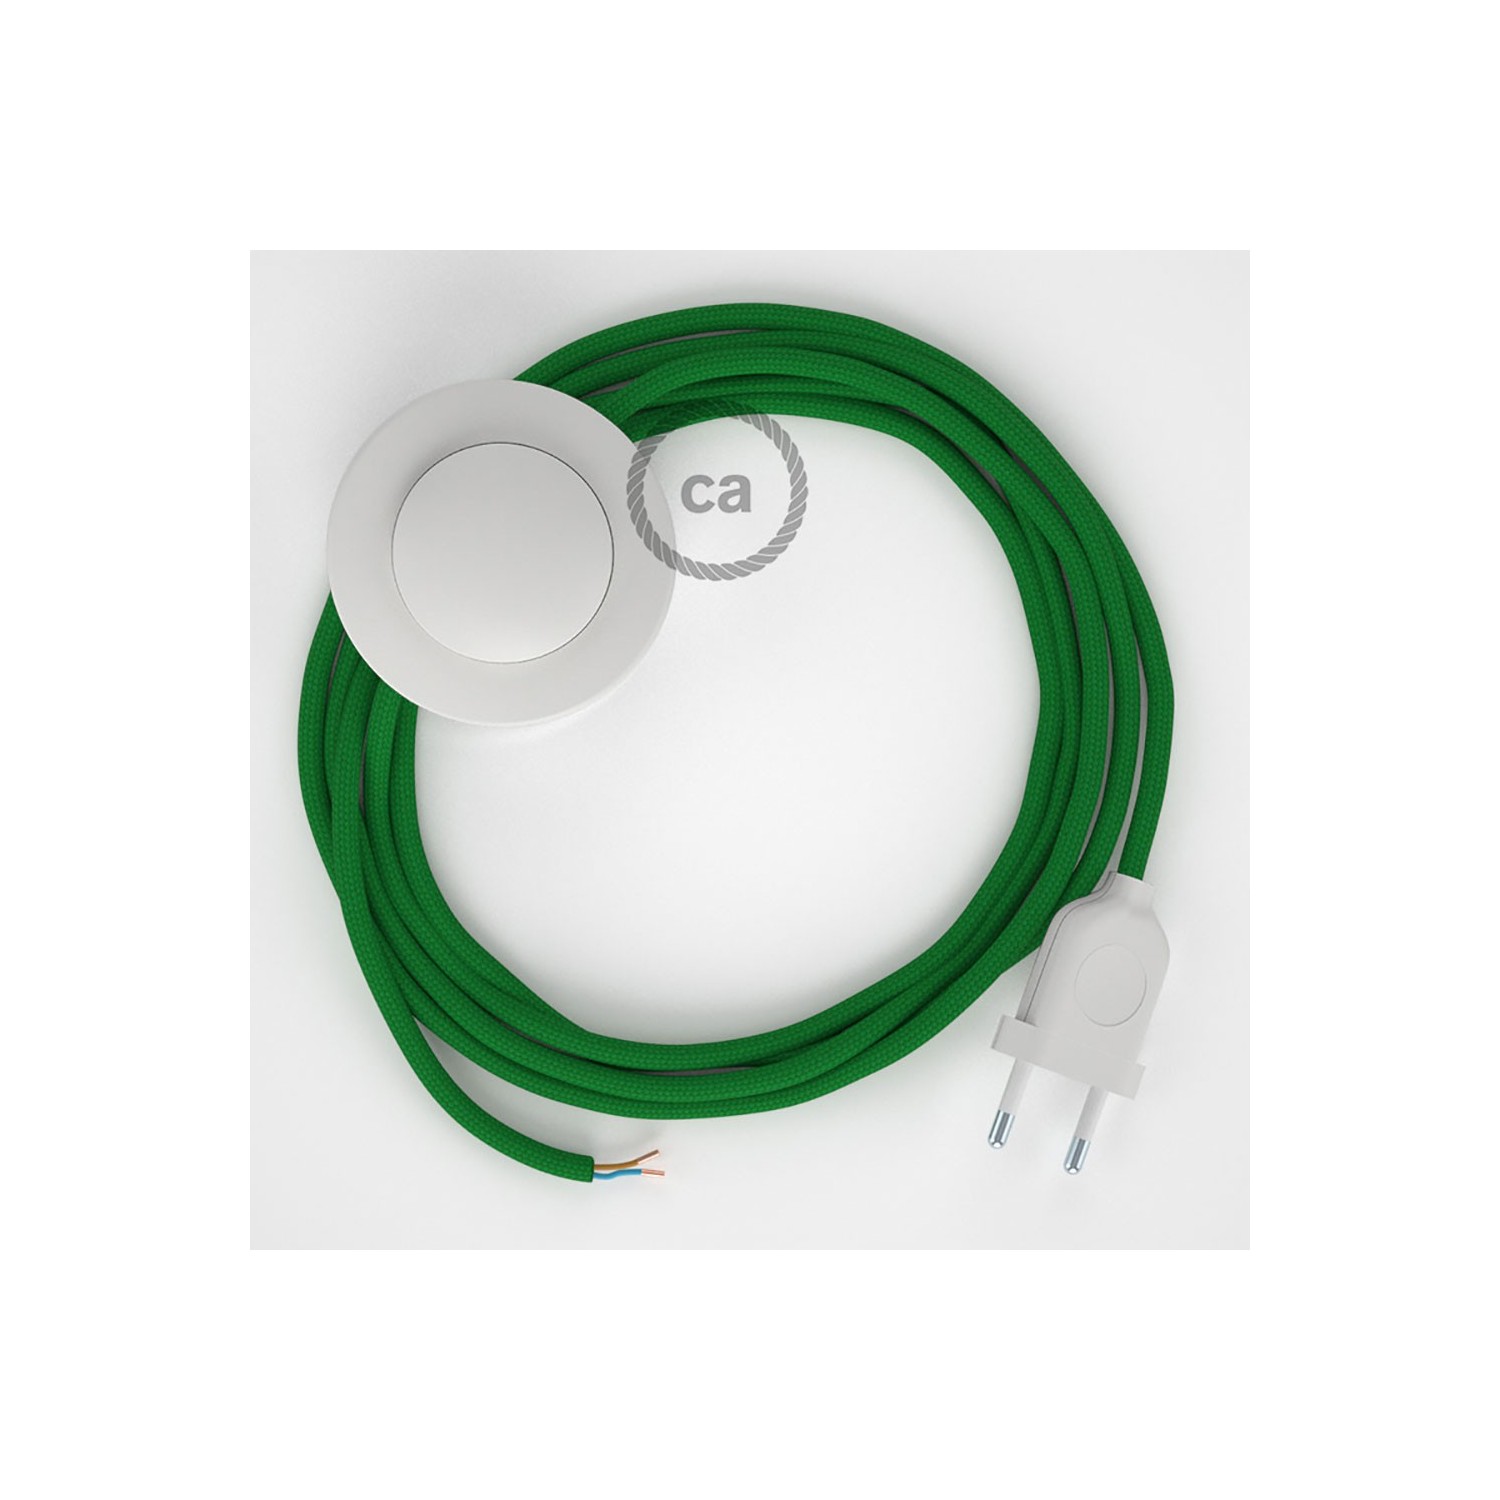 Stehleuchte Anschlussleitung RM06 Grün Seideneffekt 3 m. Wählen Sie aus drei Farben bei Schalter und Stecke.